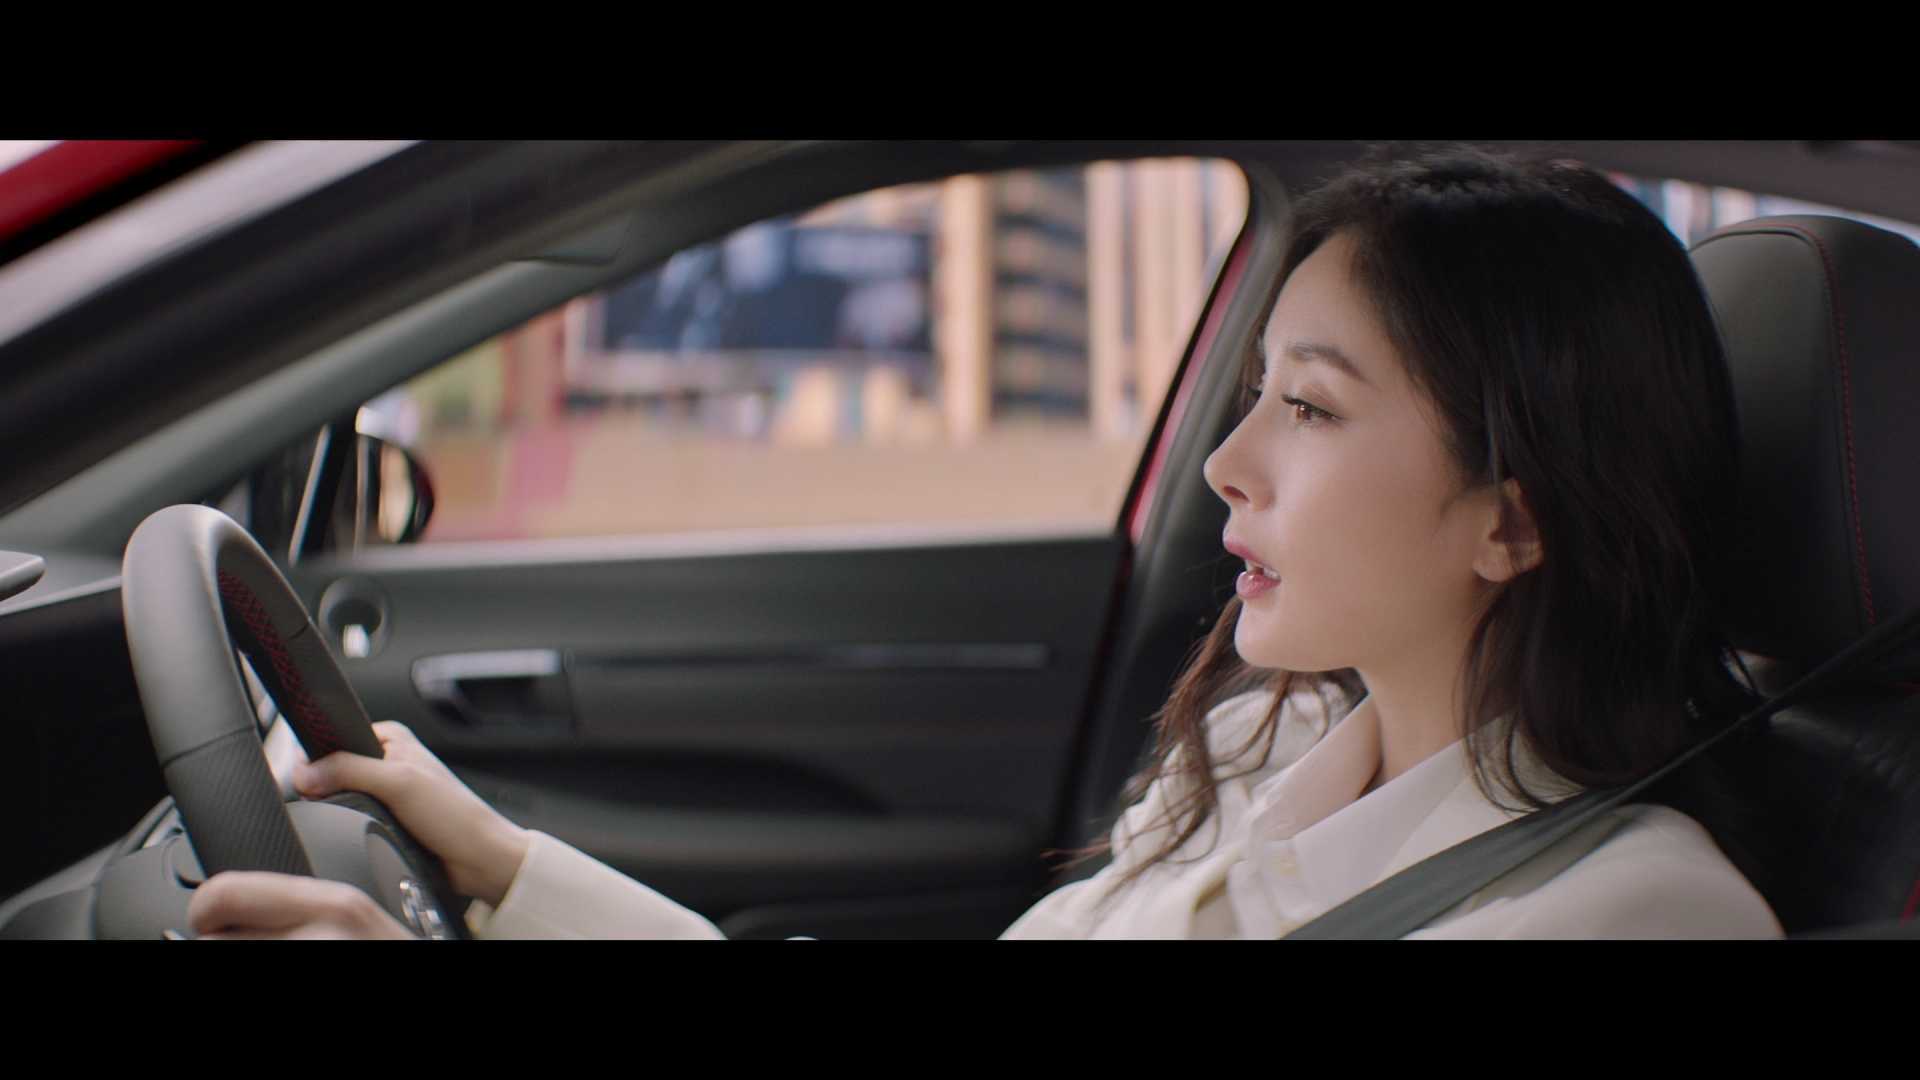 汽车广告—北京现代-《遇见索纳塔品牌拍摄 现场花絮》 第十代索纳塔